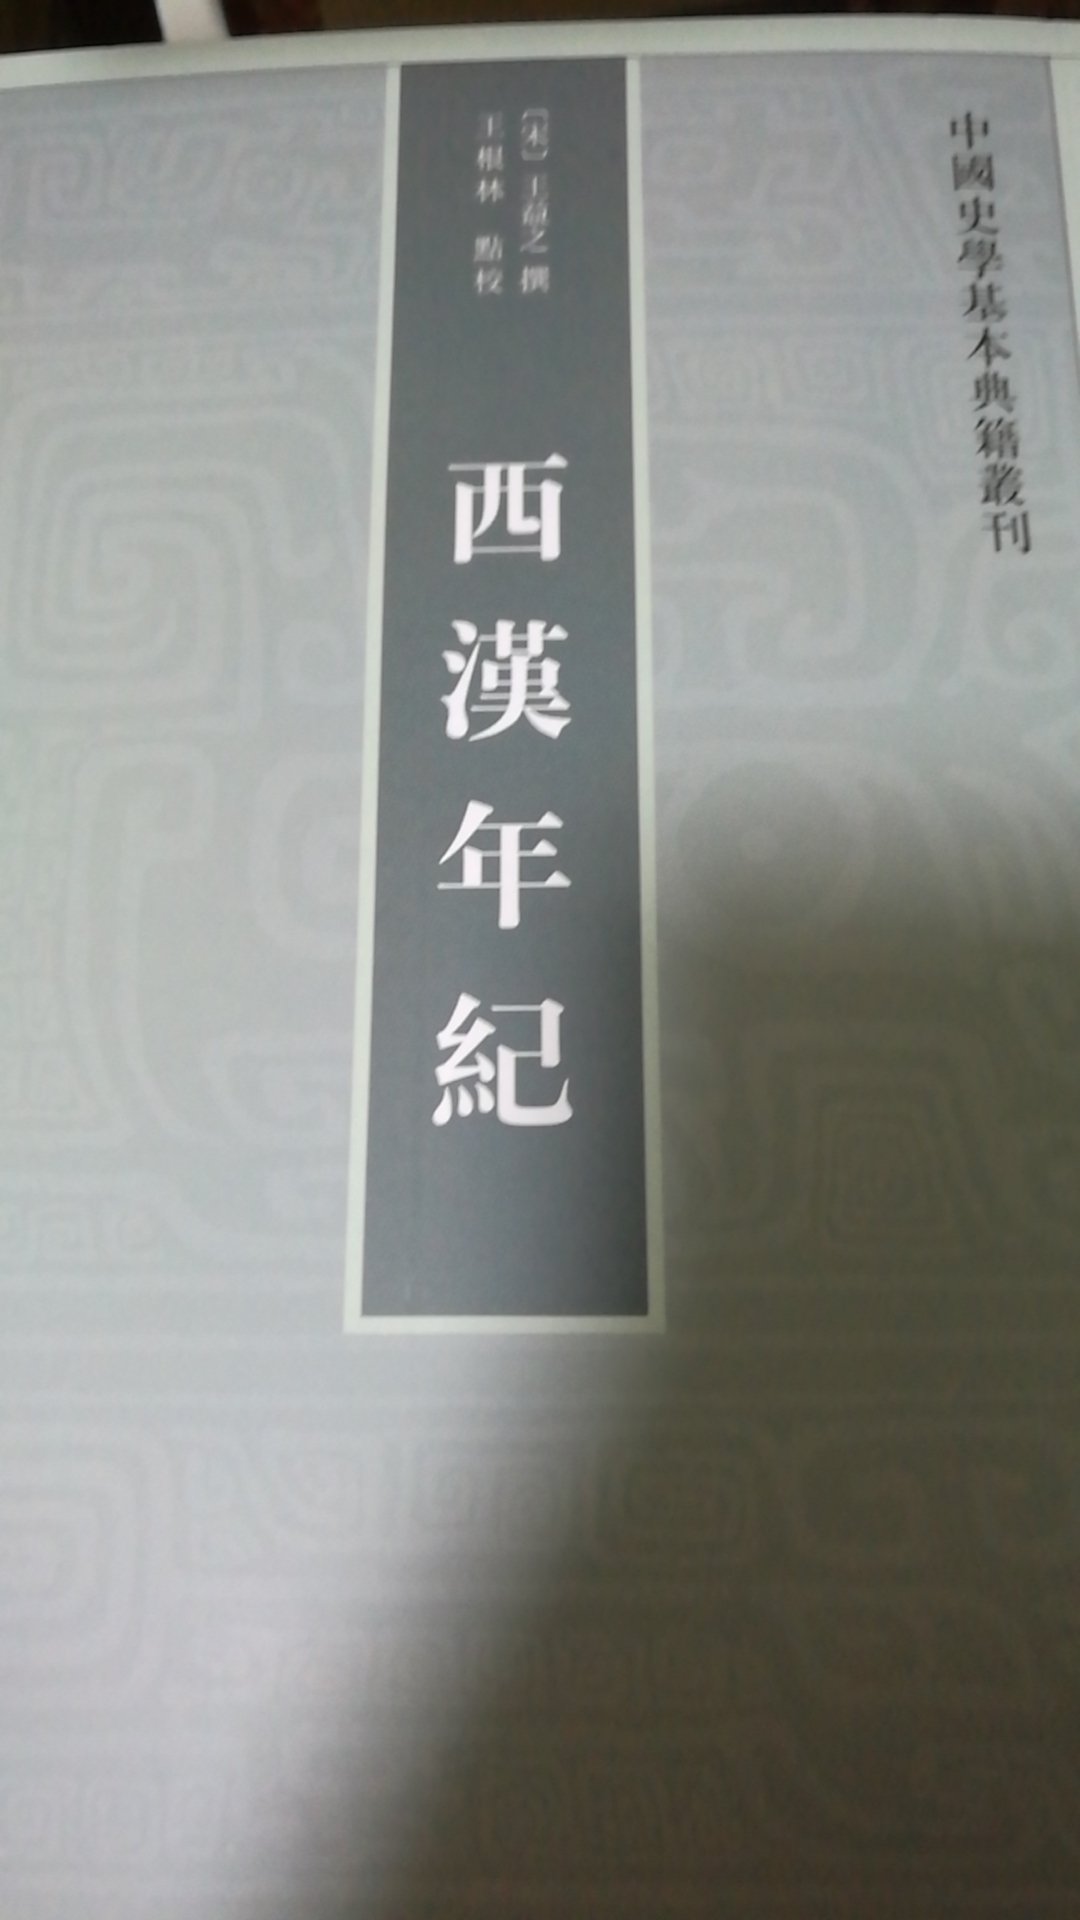 中国史学基本典籍丛刊之一，虽然非常小众，但是值得阅读与收藏！